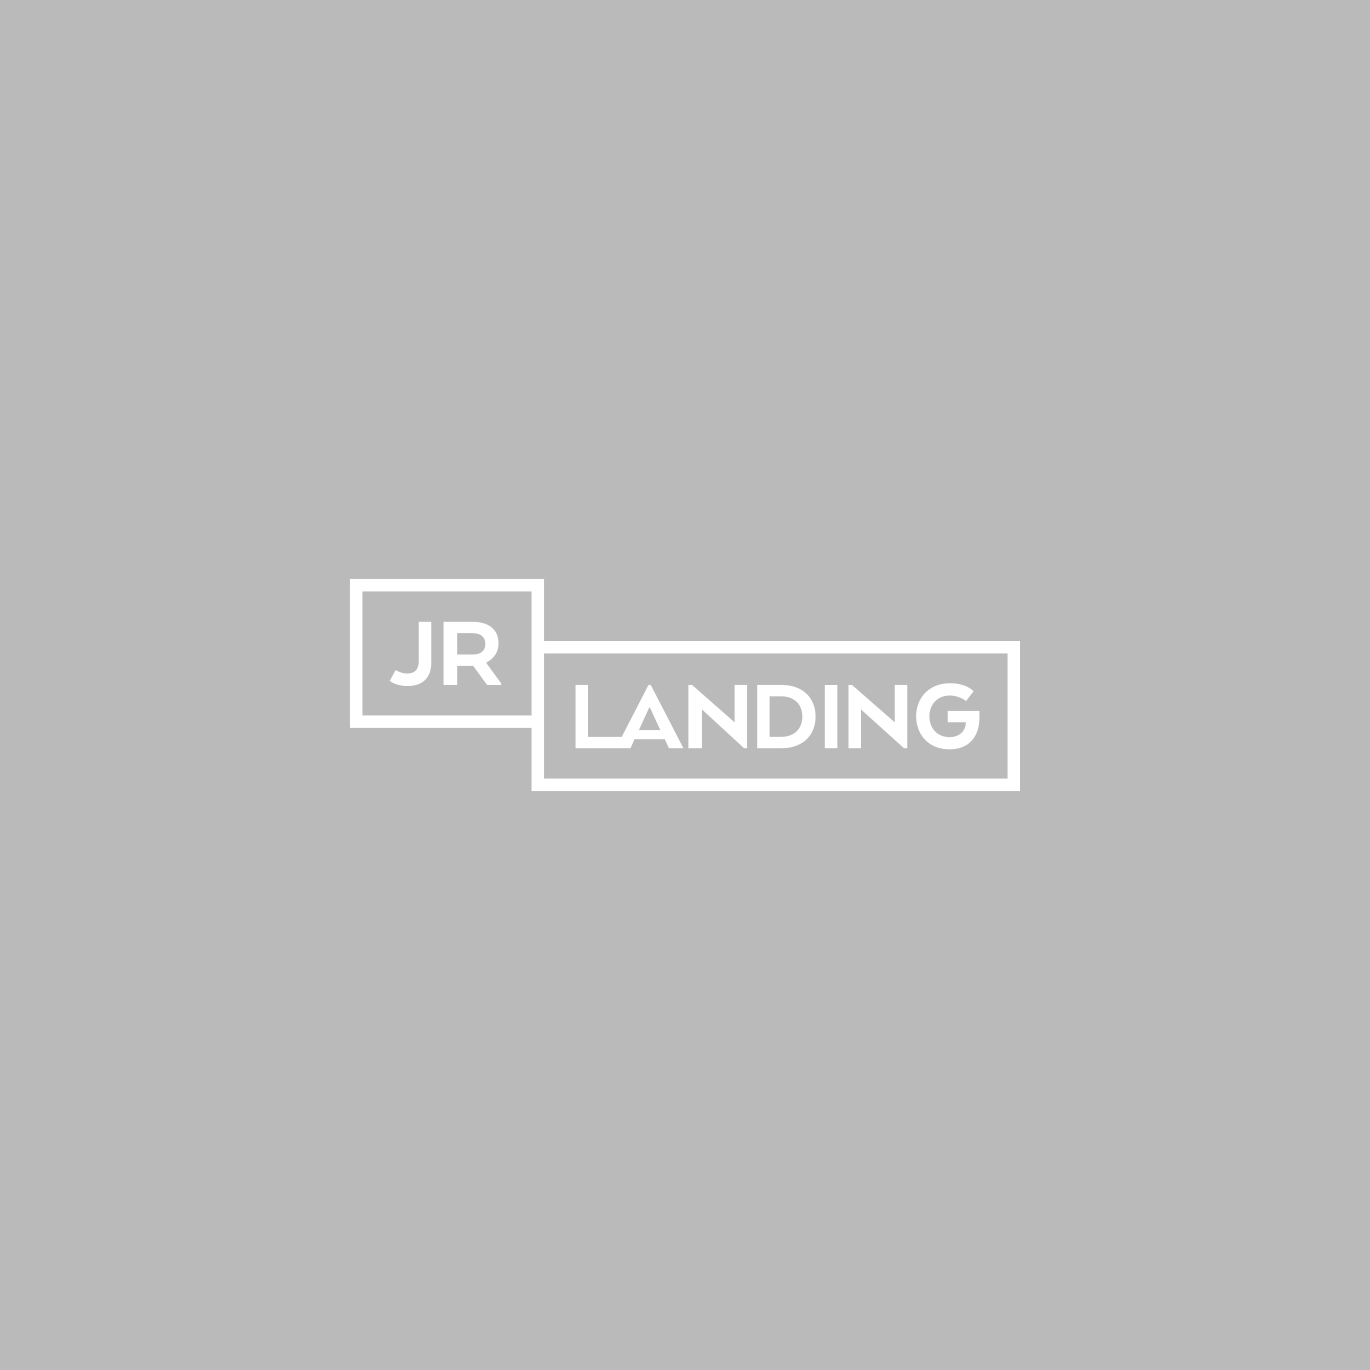 JR Landing Logo